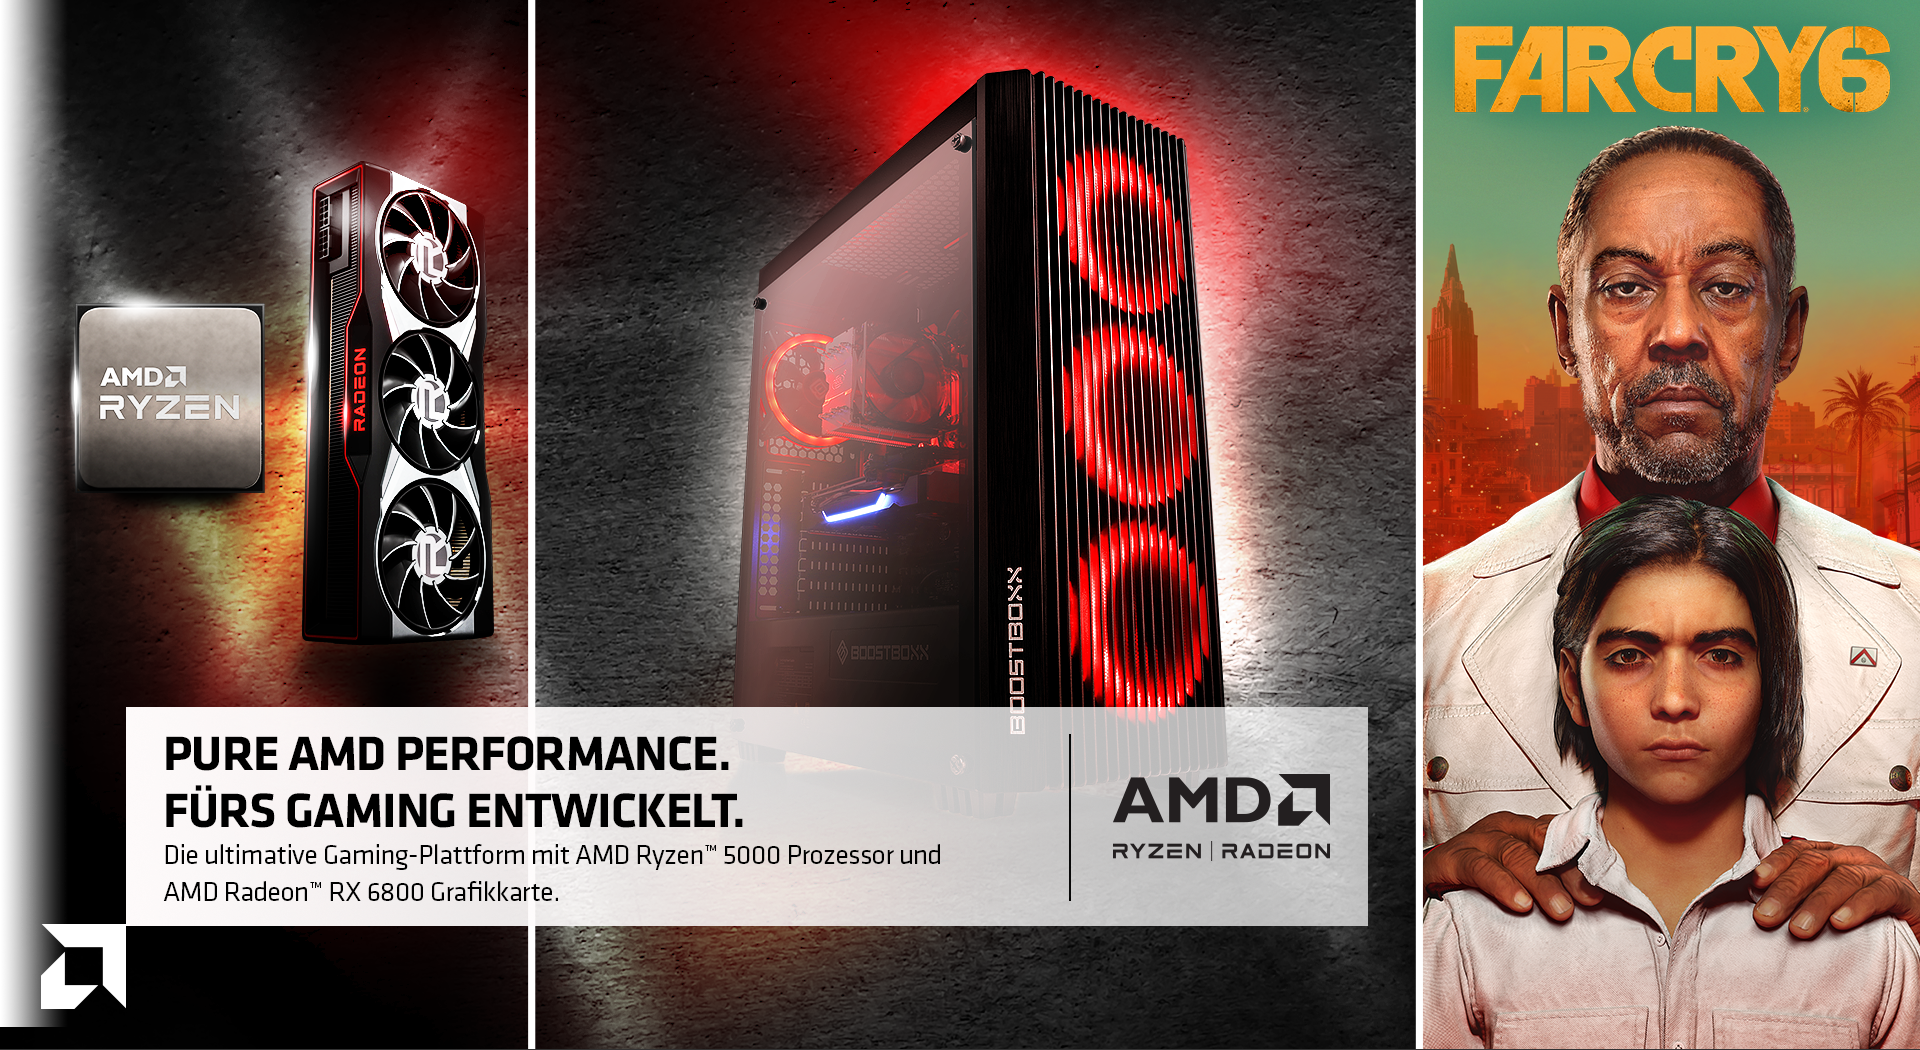 AMD Ryzen Radeon & Far Cry 6 Hero image - Pure AMD Performance. Fürs Gaming entwickelt. Die ultimative Gaming-Plattform mit AMD Ryzen 5000 Prozessor und AMD Radeon RX 6800 Grafikkarte.